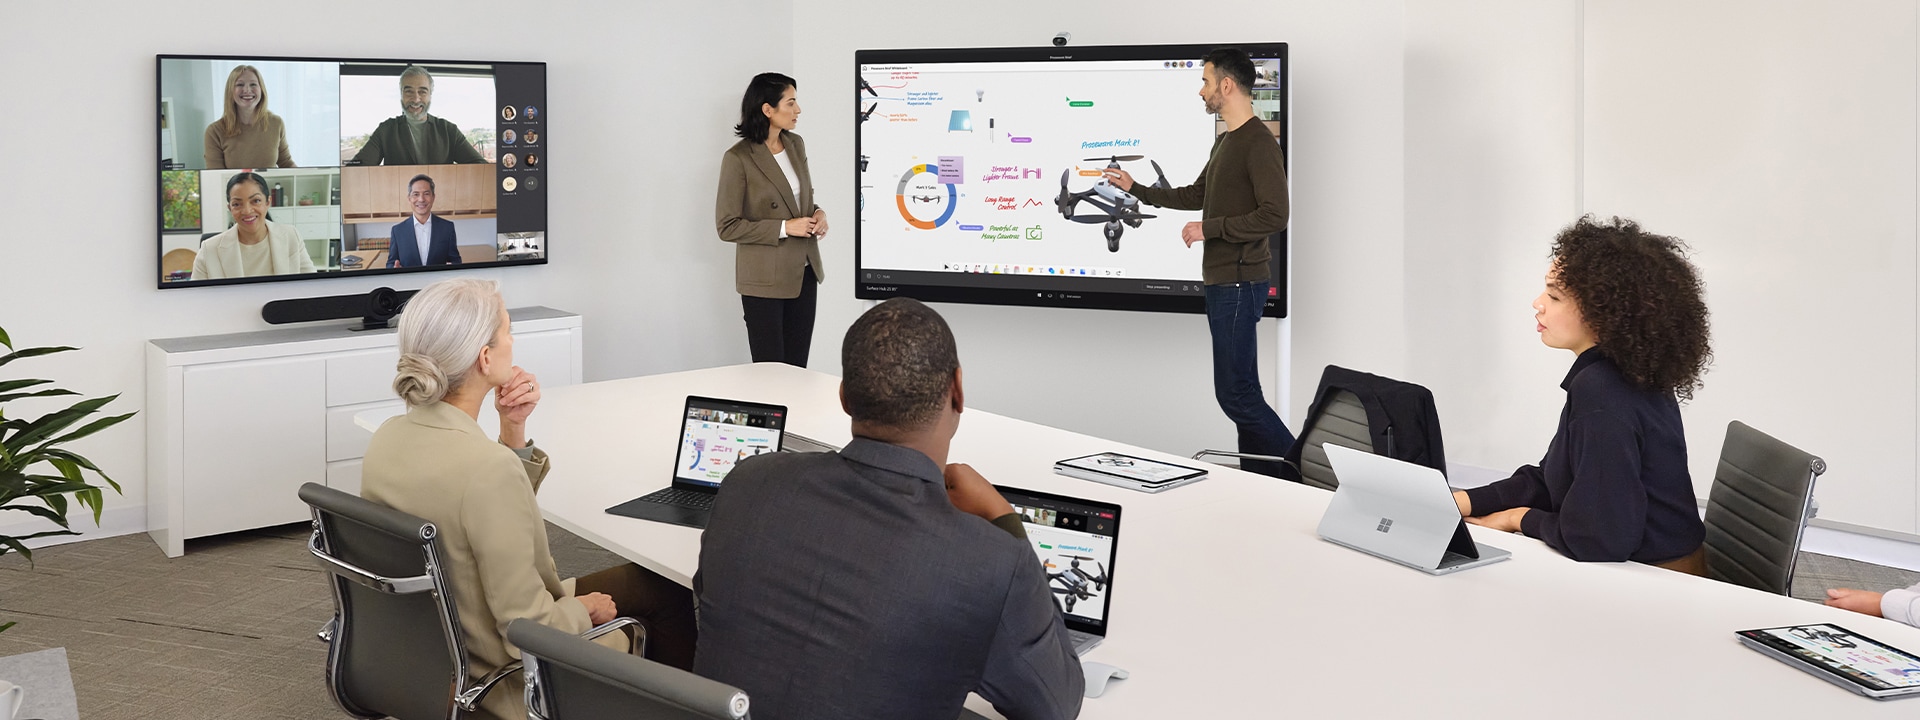 Zwei Kollegen arbeiten über das Surface Hub 2S zusammen und leiten gleichzeitig eine virtuelle Teams-Besprechung auf einem Surface-Laptop auf einem Schreibtisch in der Nähe